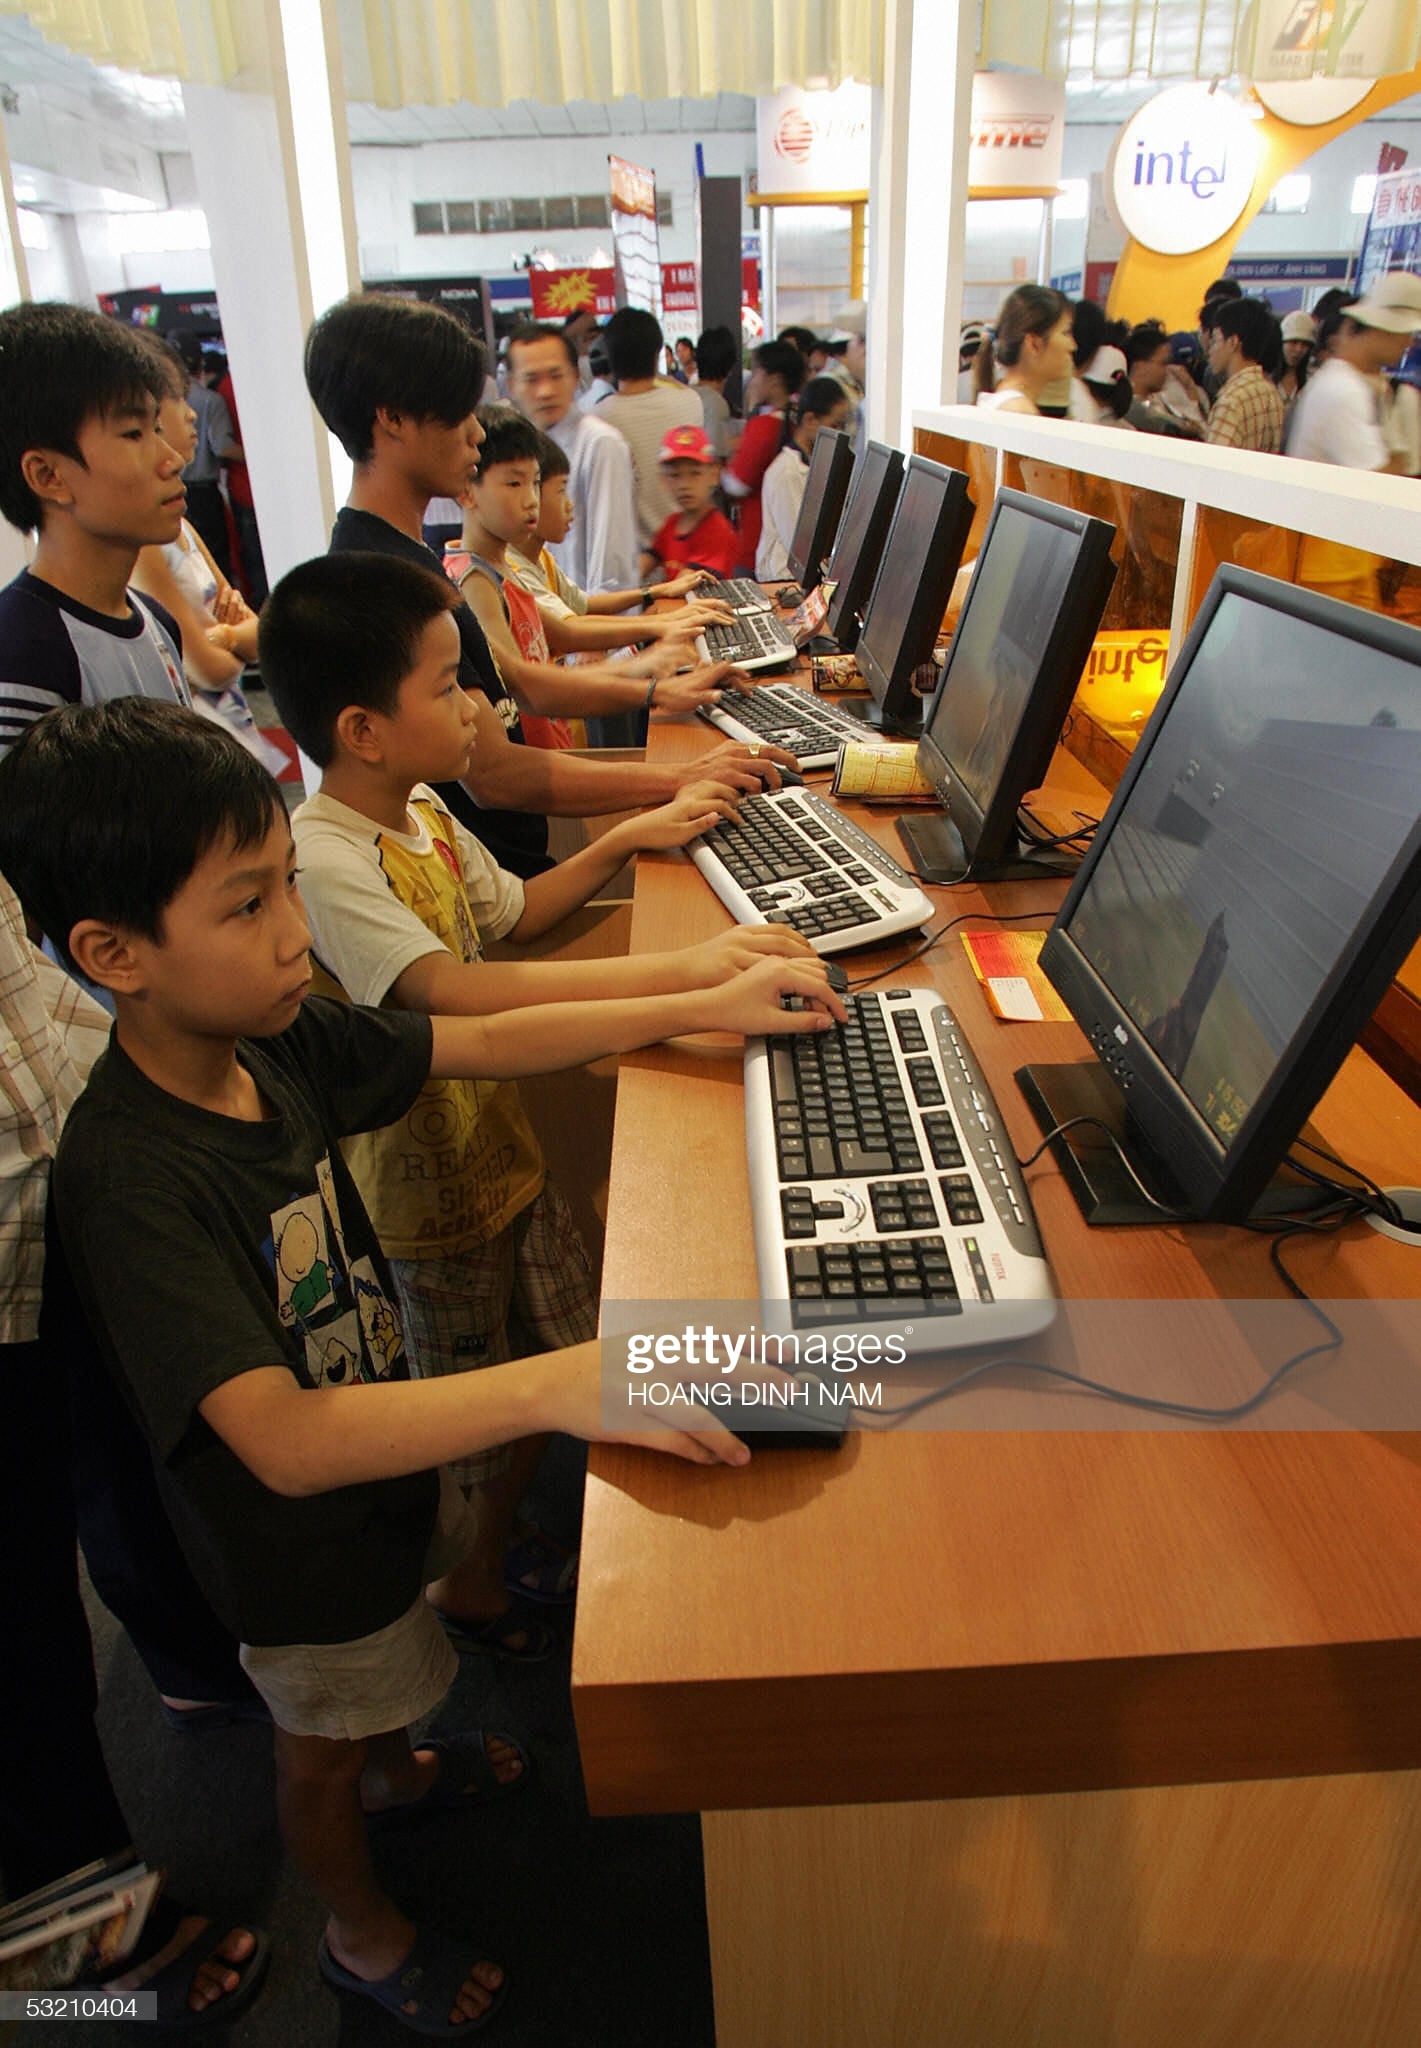 Ngày 8/7/2005, một buổi triển lãm lớn về công nghệ thông tin được tổ chức tại TP.HCM, thu hút rất nhiều người tham gia. Trong hình là trẻ em đến chơi game tại cuộc triển lãm.